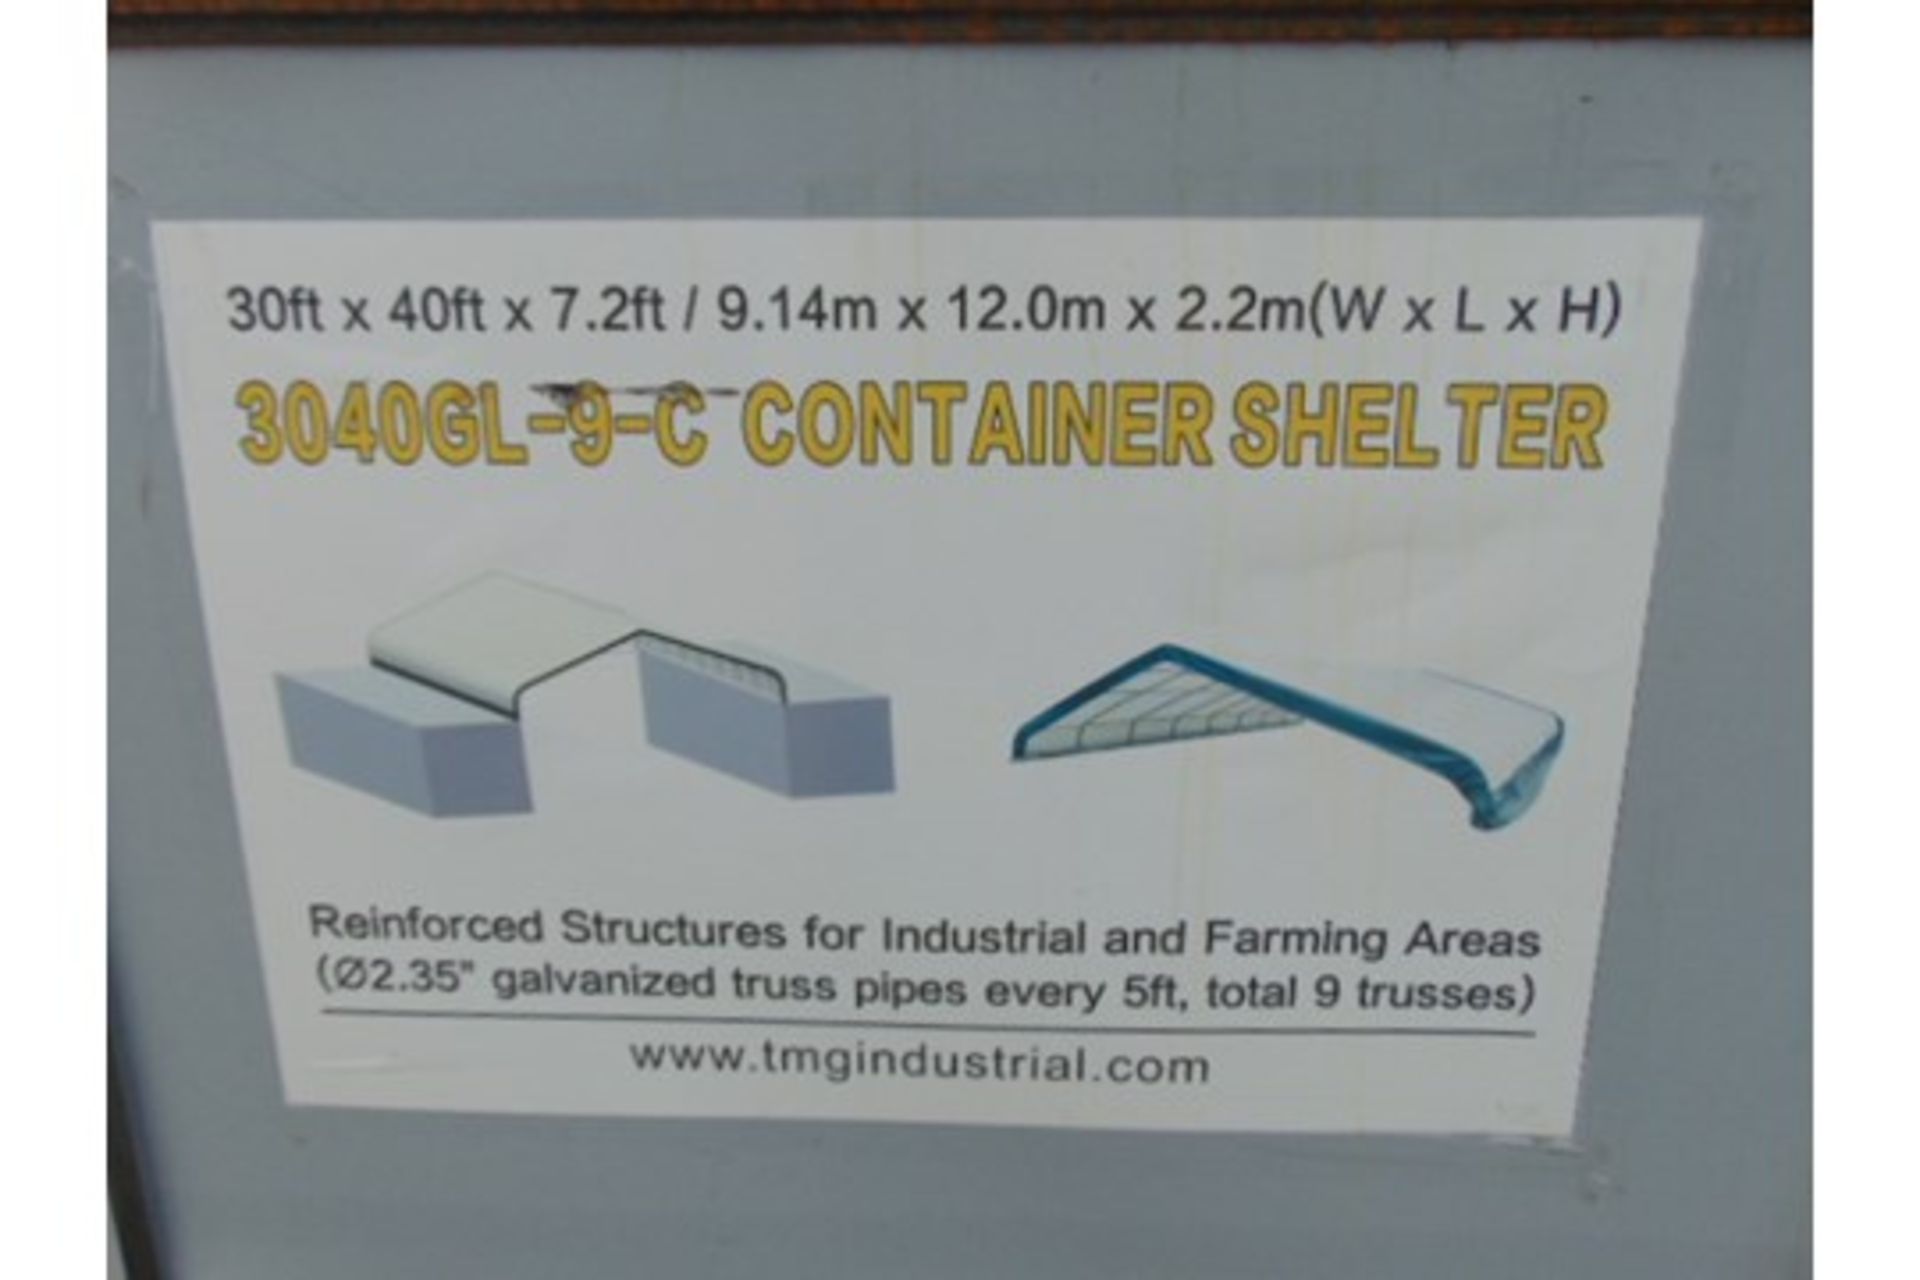 Container Shelter 30'W x 40'L x 7.2' H P/No 3040GL-9-C - Image 3 of 3